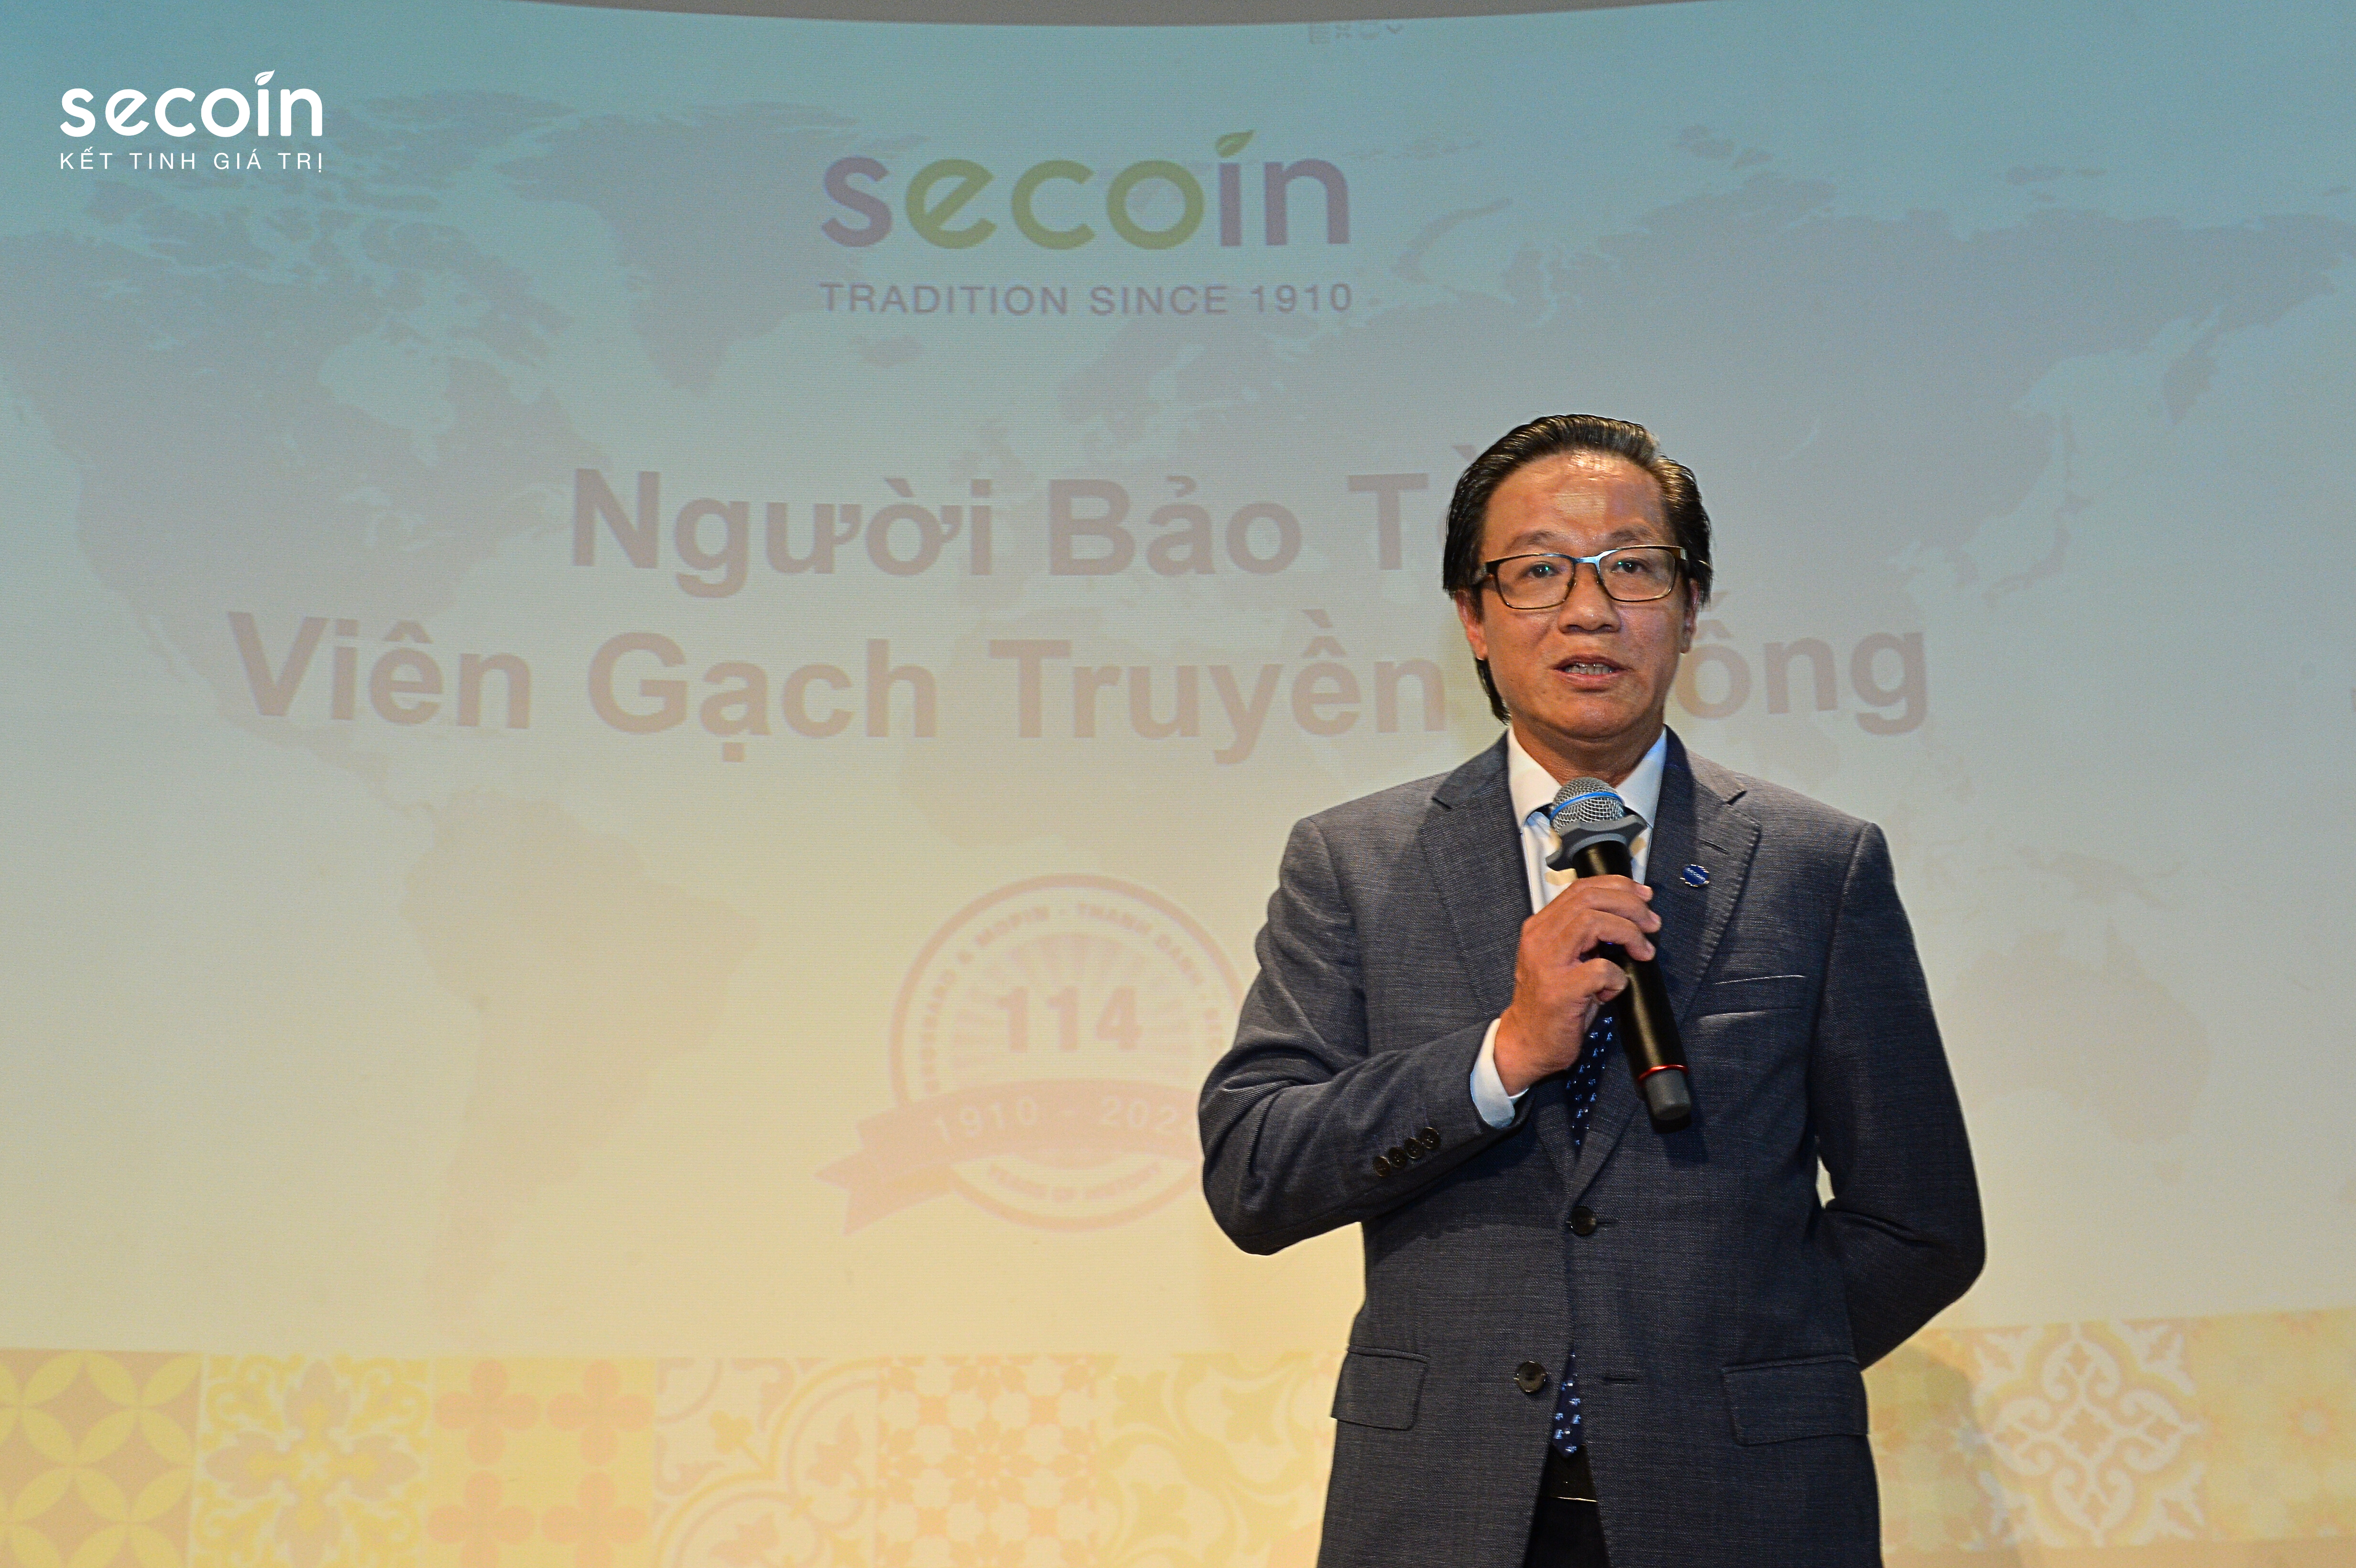  Ông Đinh Hồng Kỳ - Chủ tịch HĐQT Công ty CP Secoin chia sẻ cầu chuyện bảo tồn gạch bông, một sản phẩm di sản của Việt Nam